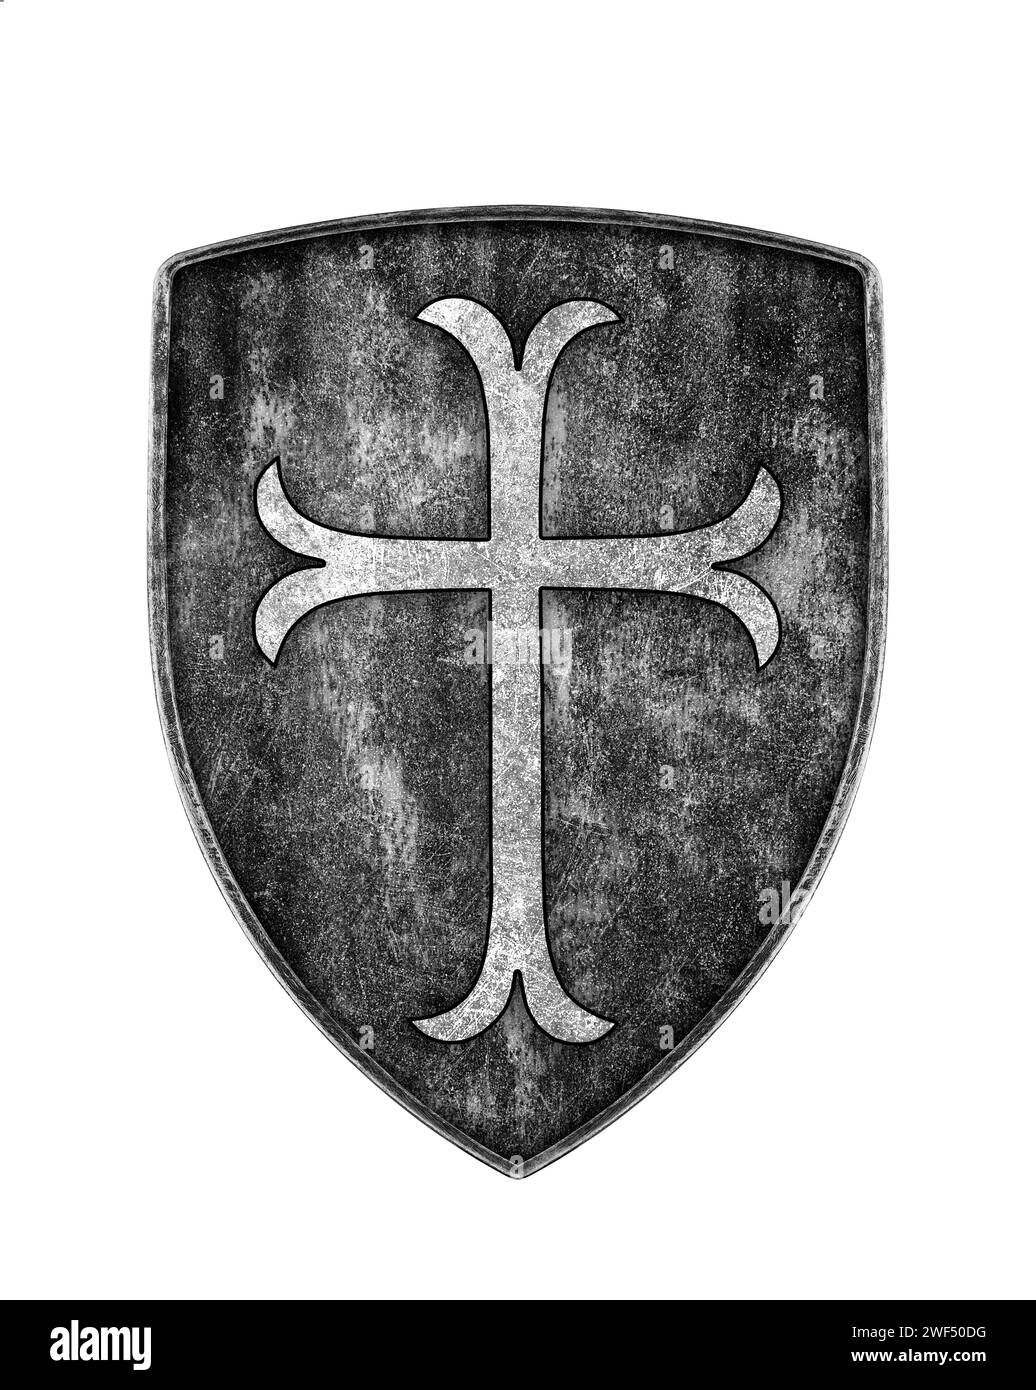 Vieux bouclier de croisés en métal avec croix isolé sur fond blanc Banque D'Images